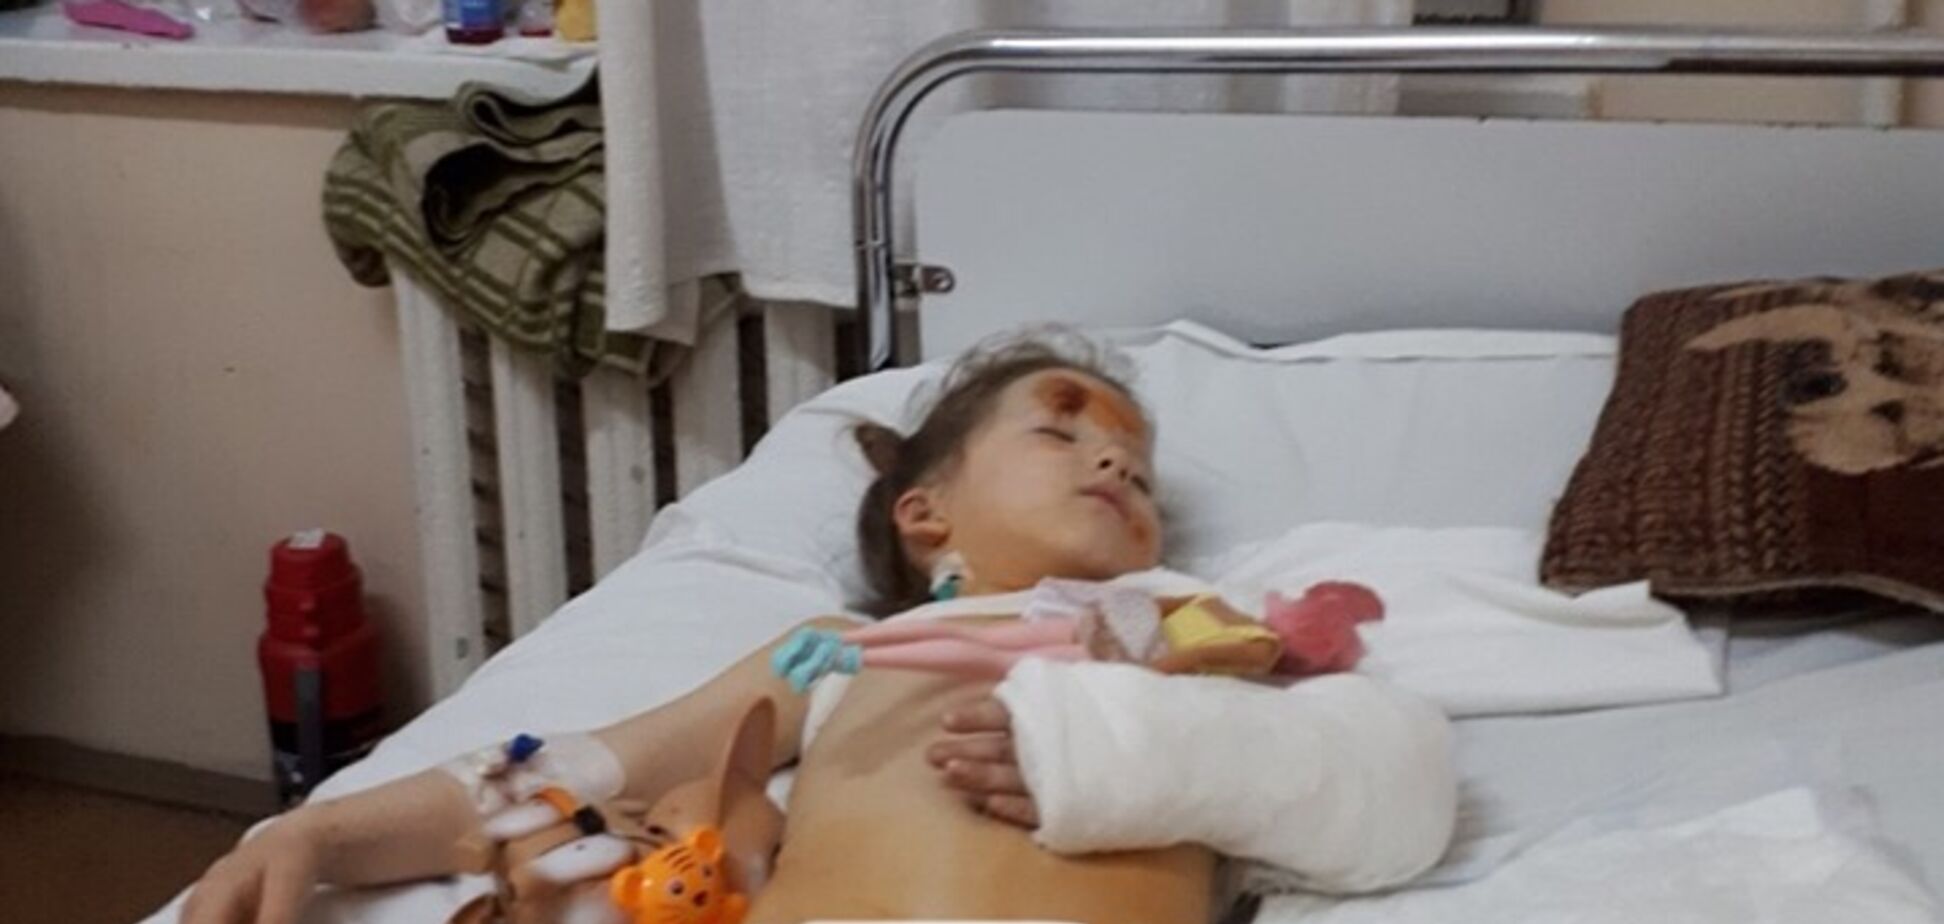 Восемь переломов и рваные раны: появились жуткие подробности о ДТП с 4-летней дочкой экс-АТОшника 